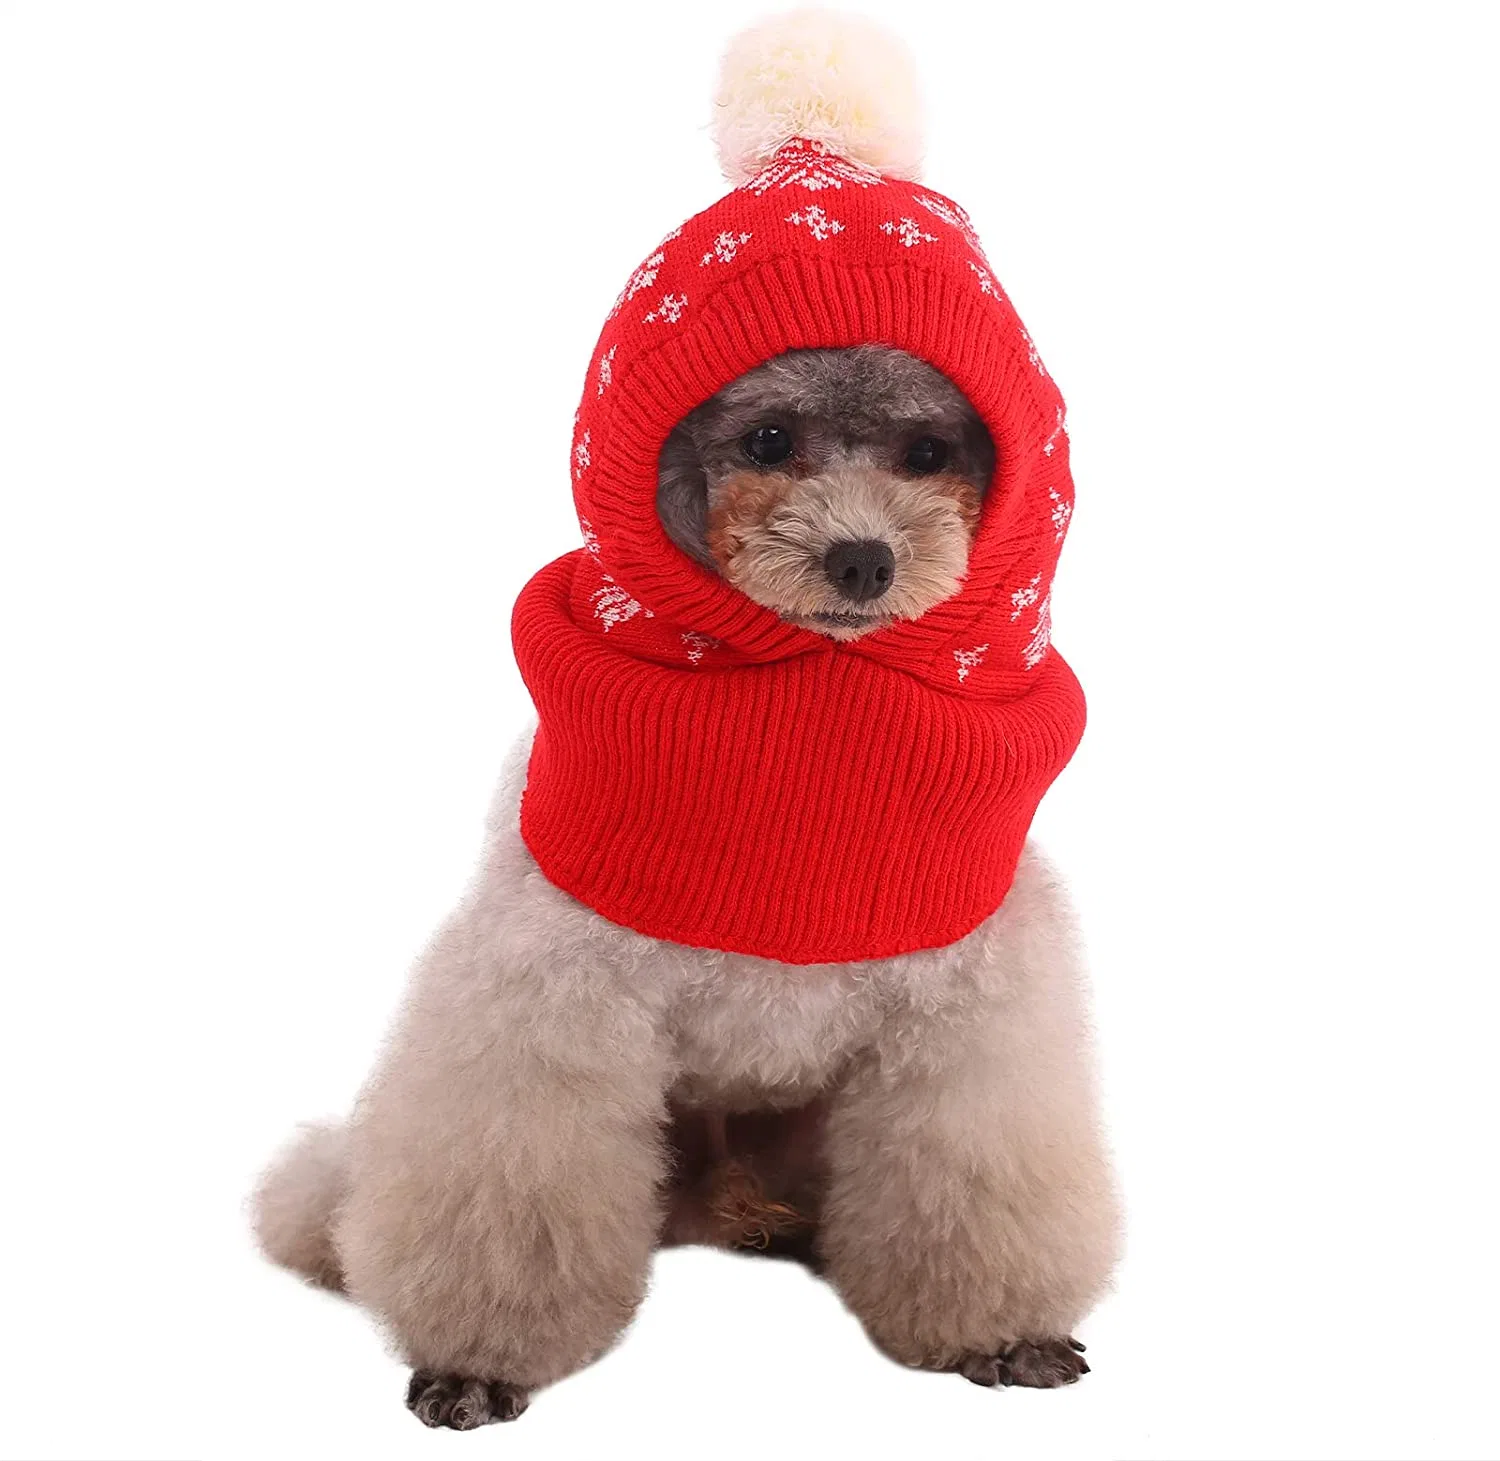 Chien de l'hiver Hat, étoffes de bonneterie de chien Hat Pet hiver chaud de Noël Caps Accessoires mignon cou capot plus chaudes de l'oreille foulard chaud Partie de décoration pour chiens et chats Pet Mettre en place pour la SMA